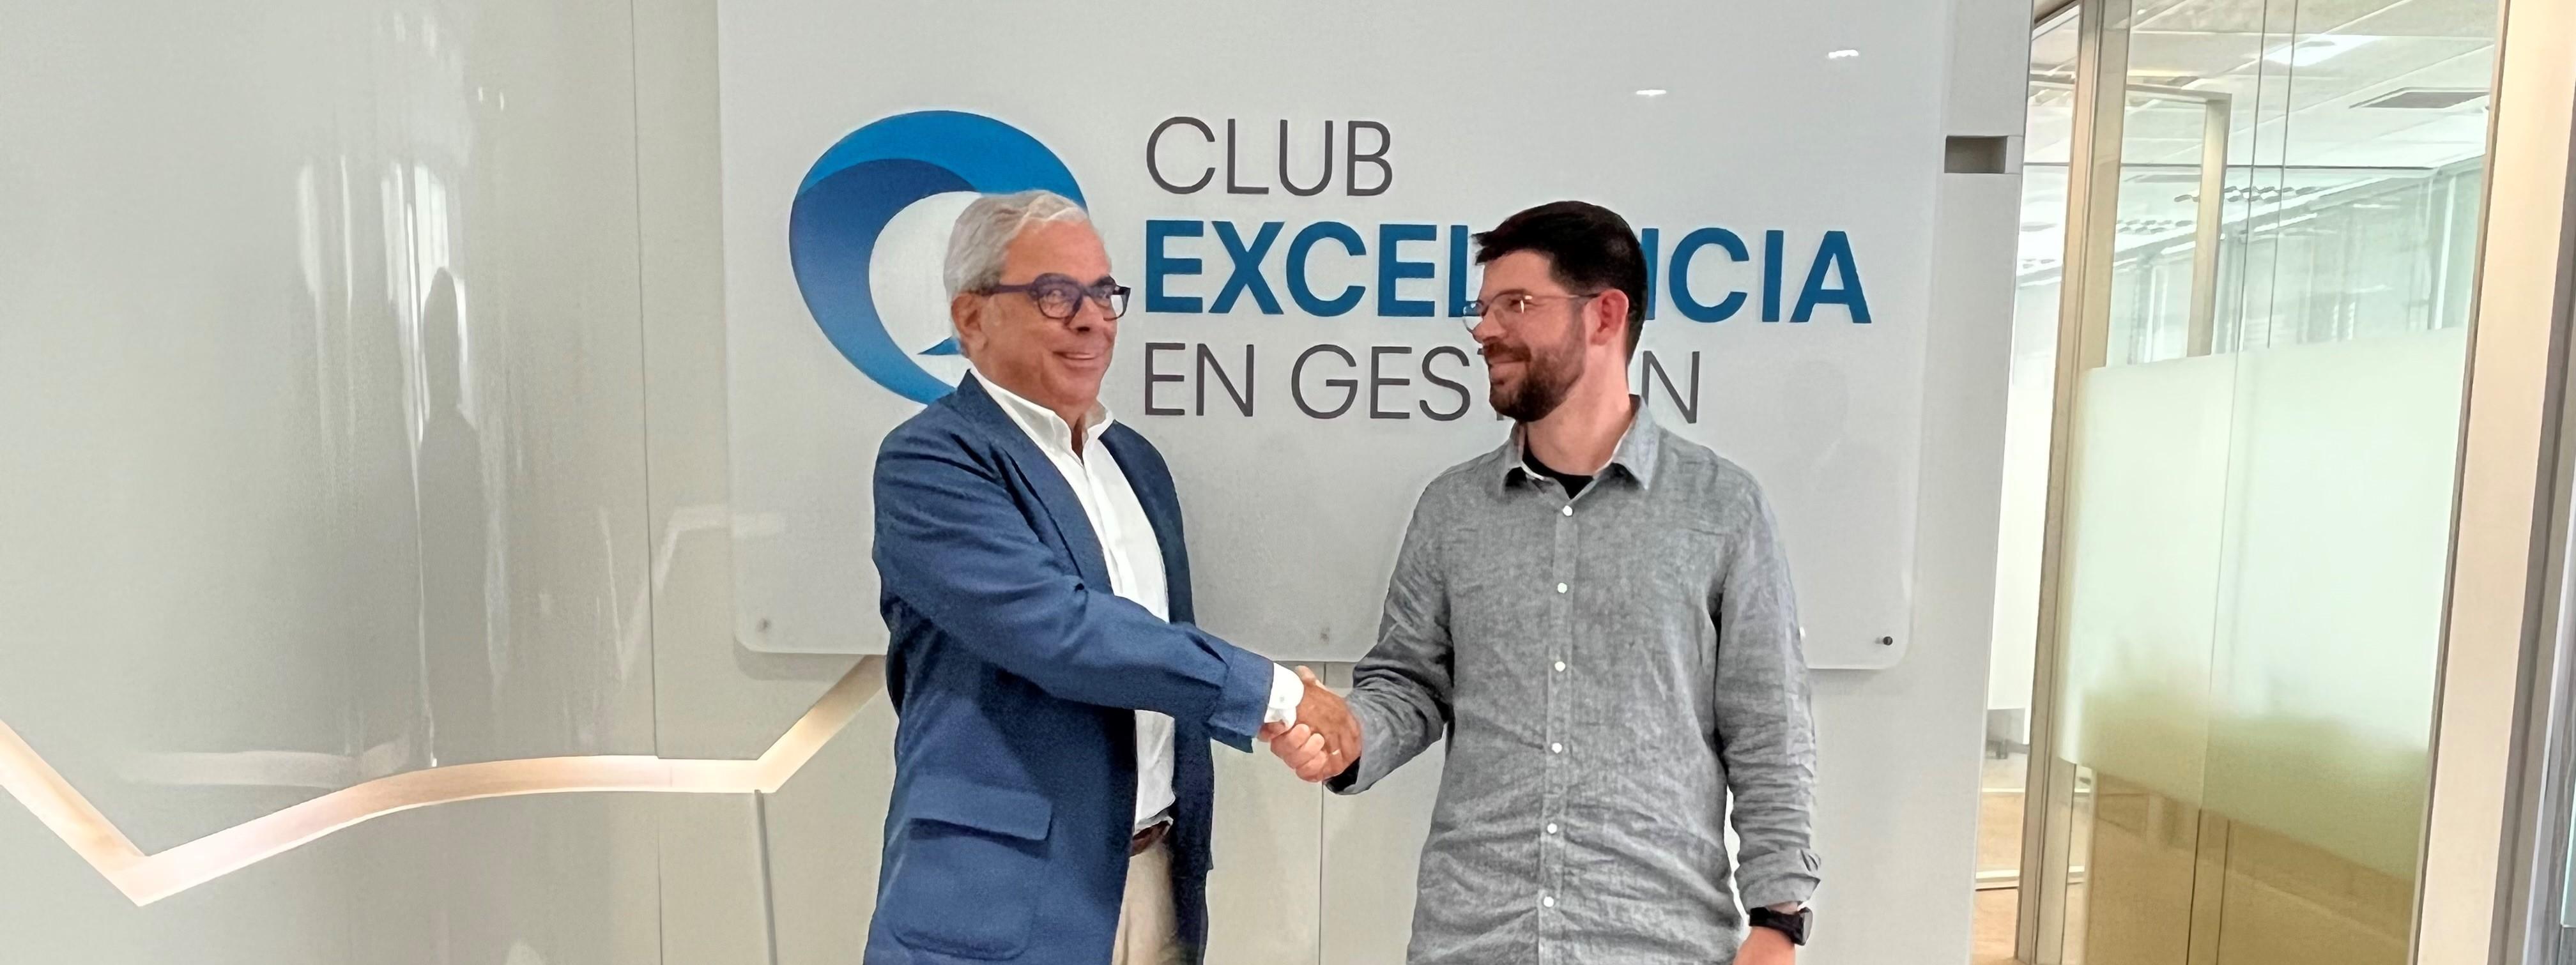 Club Excelencia en Gestión firma un acuerdo de colaboración con Prociency